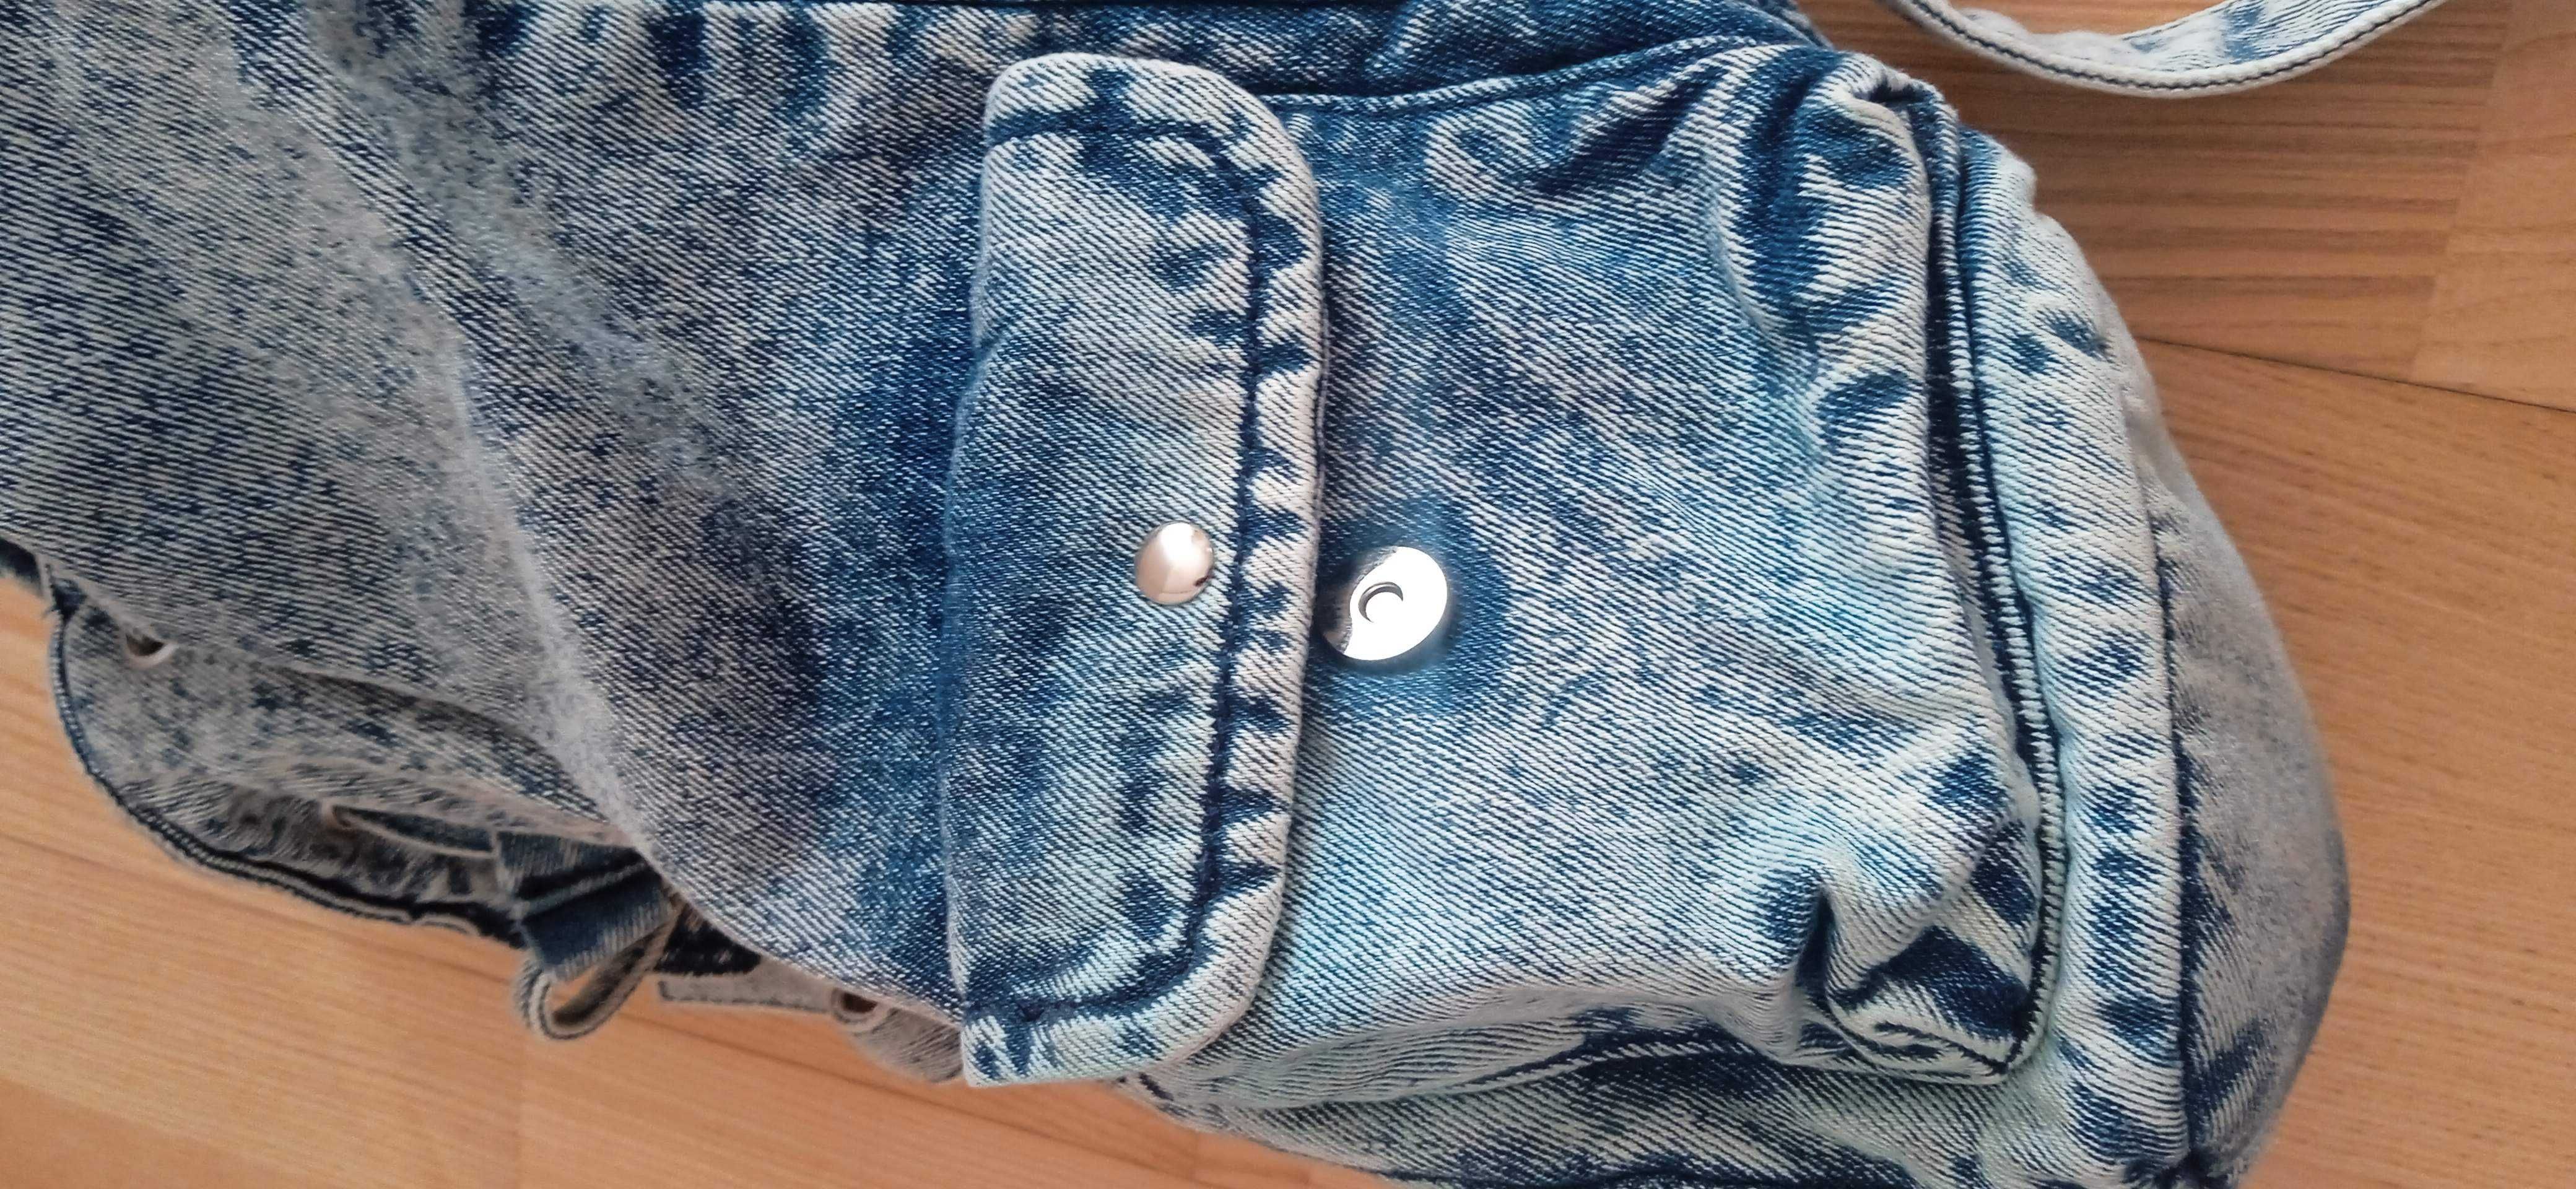 Plecak jeansowy marmurkowy